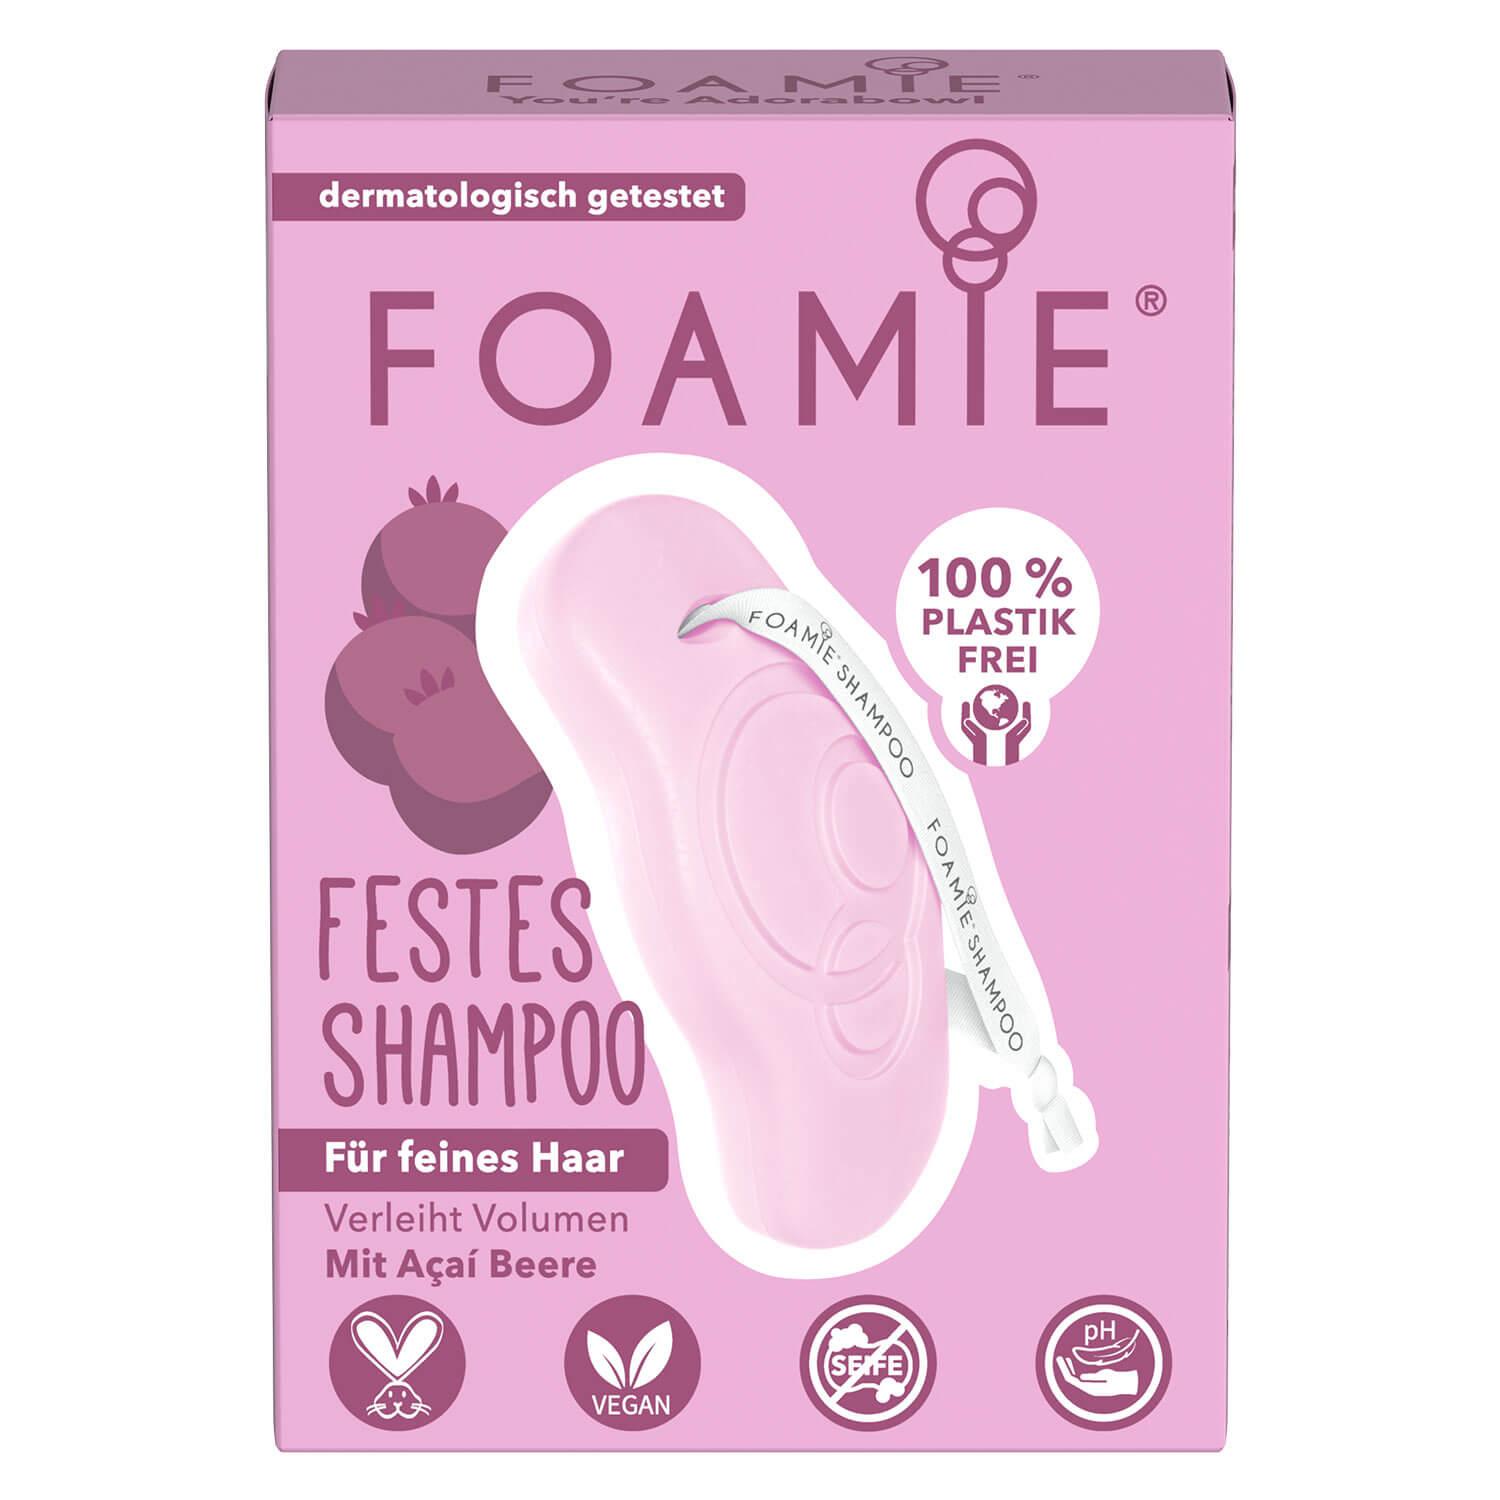 Foamie - Festes Shampoo You're Adorabowl